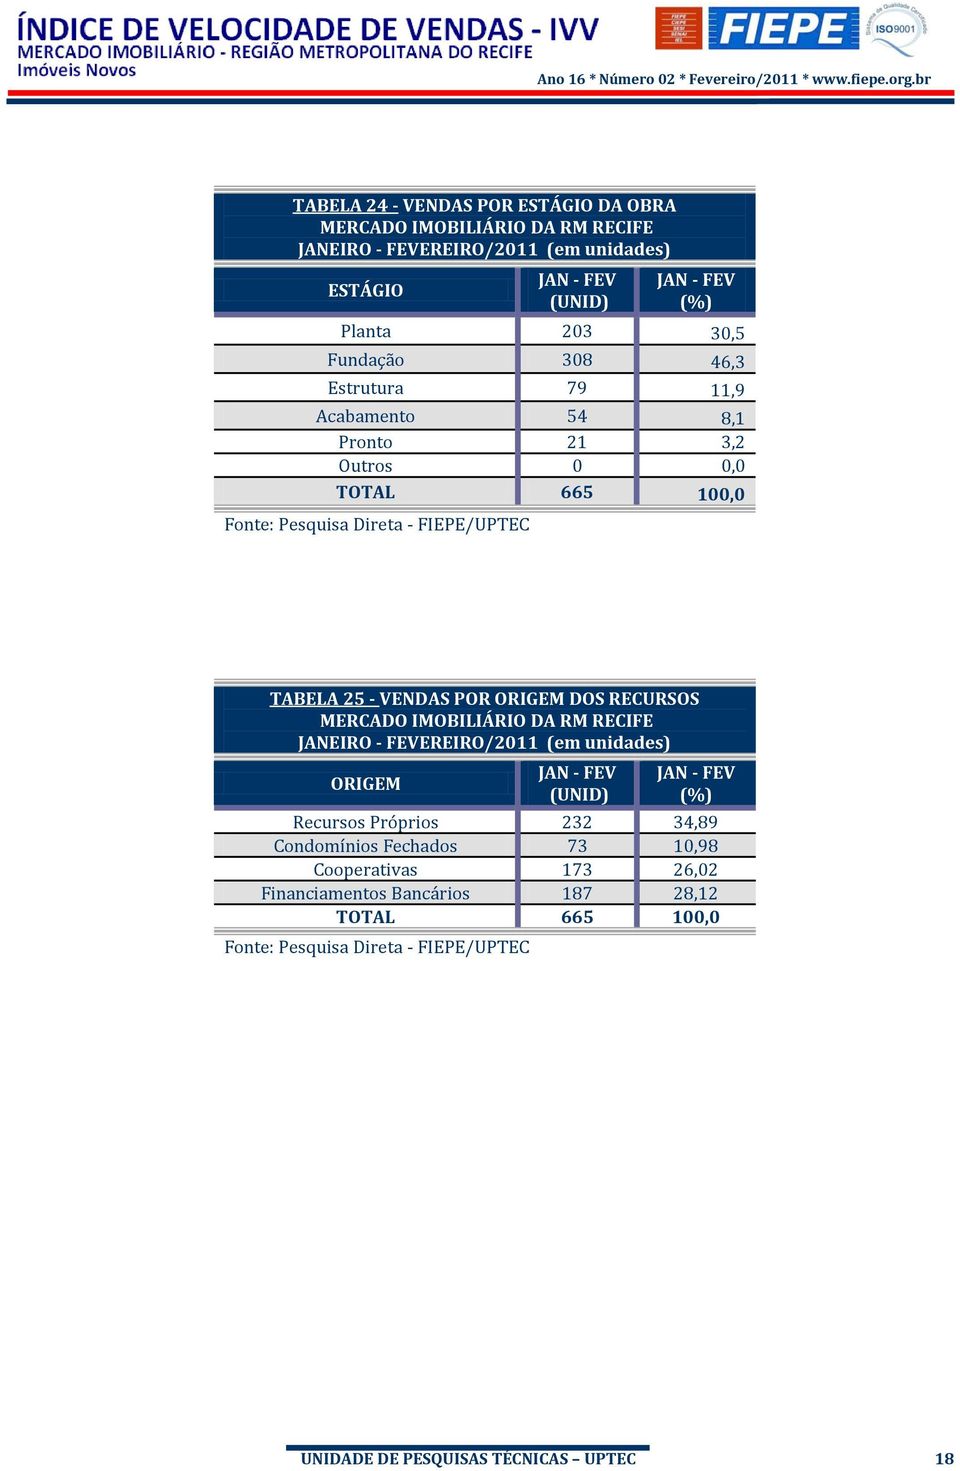 ORIGEM DOS RECURSOS MERCADO IMOBILIÁRIO DA RM RECIFE JANEIRO - FEVEREIRO/2011 (em unidades) ORIGEM JAN - FEV (UNID) JAN - FEV (%) Recursos